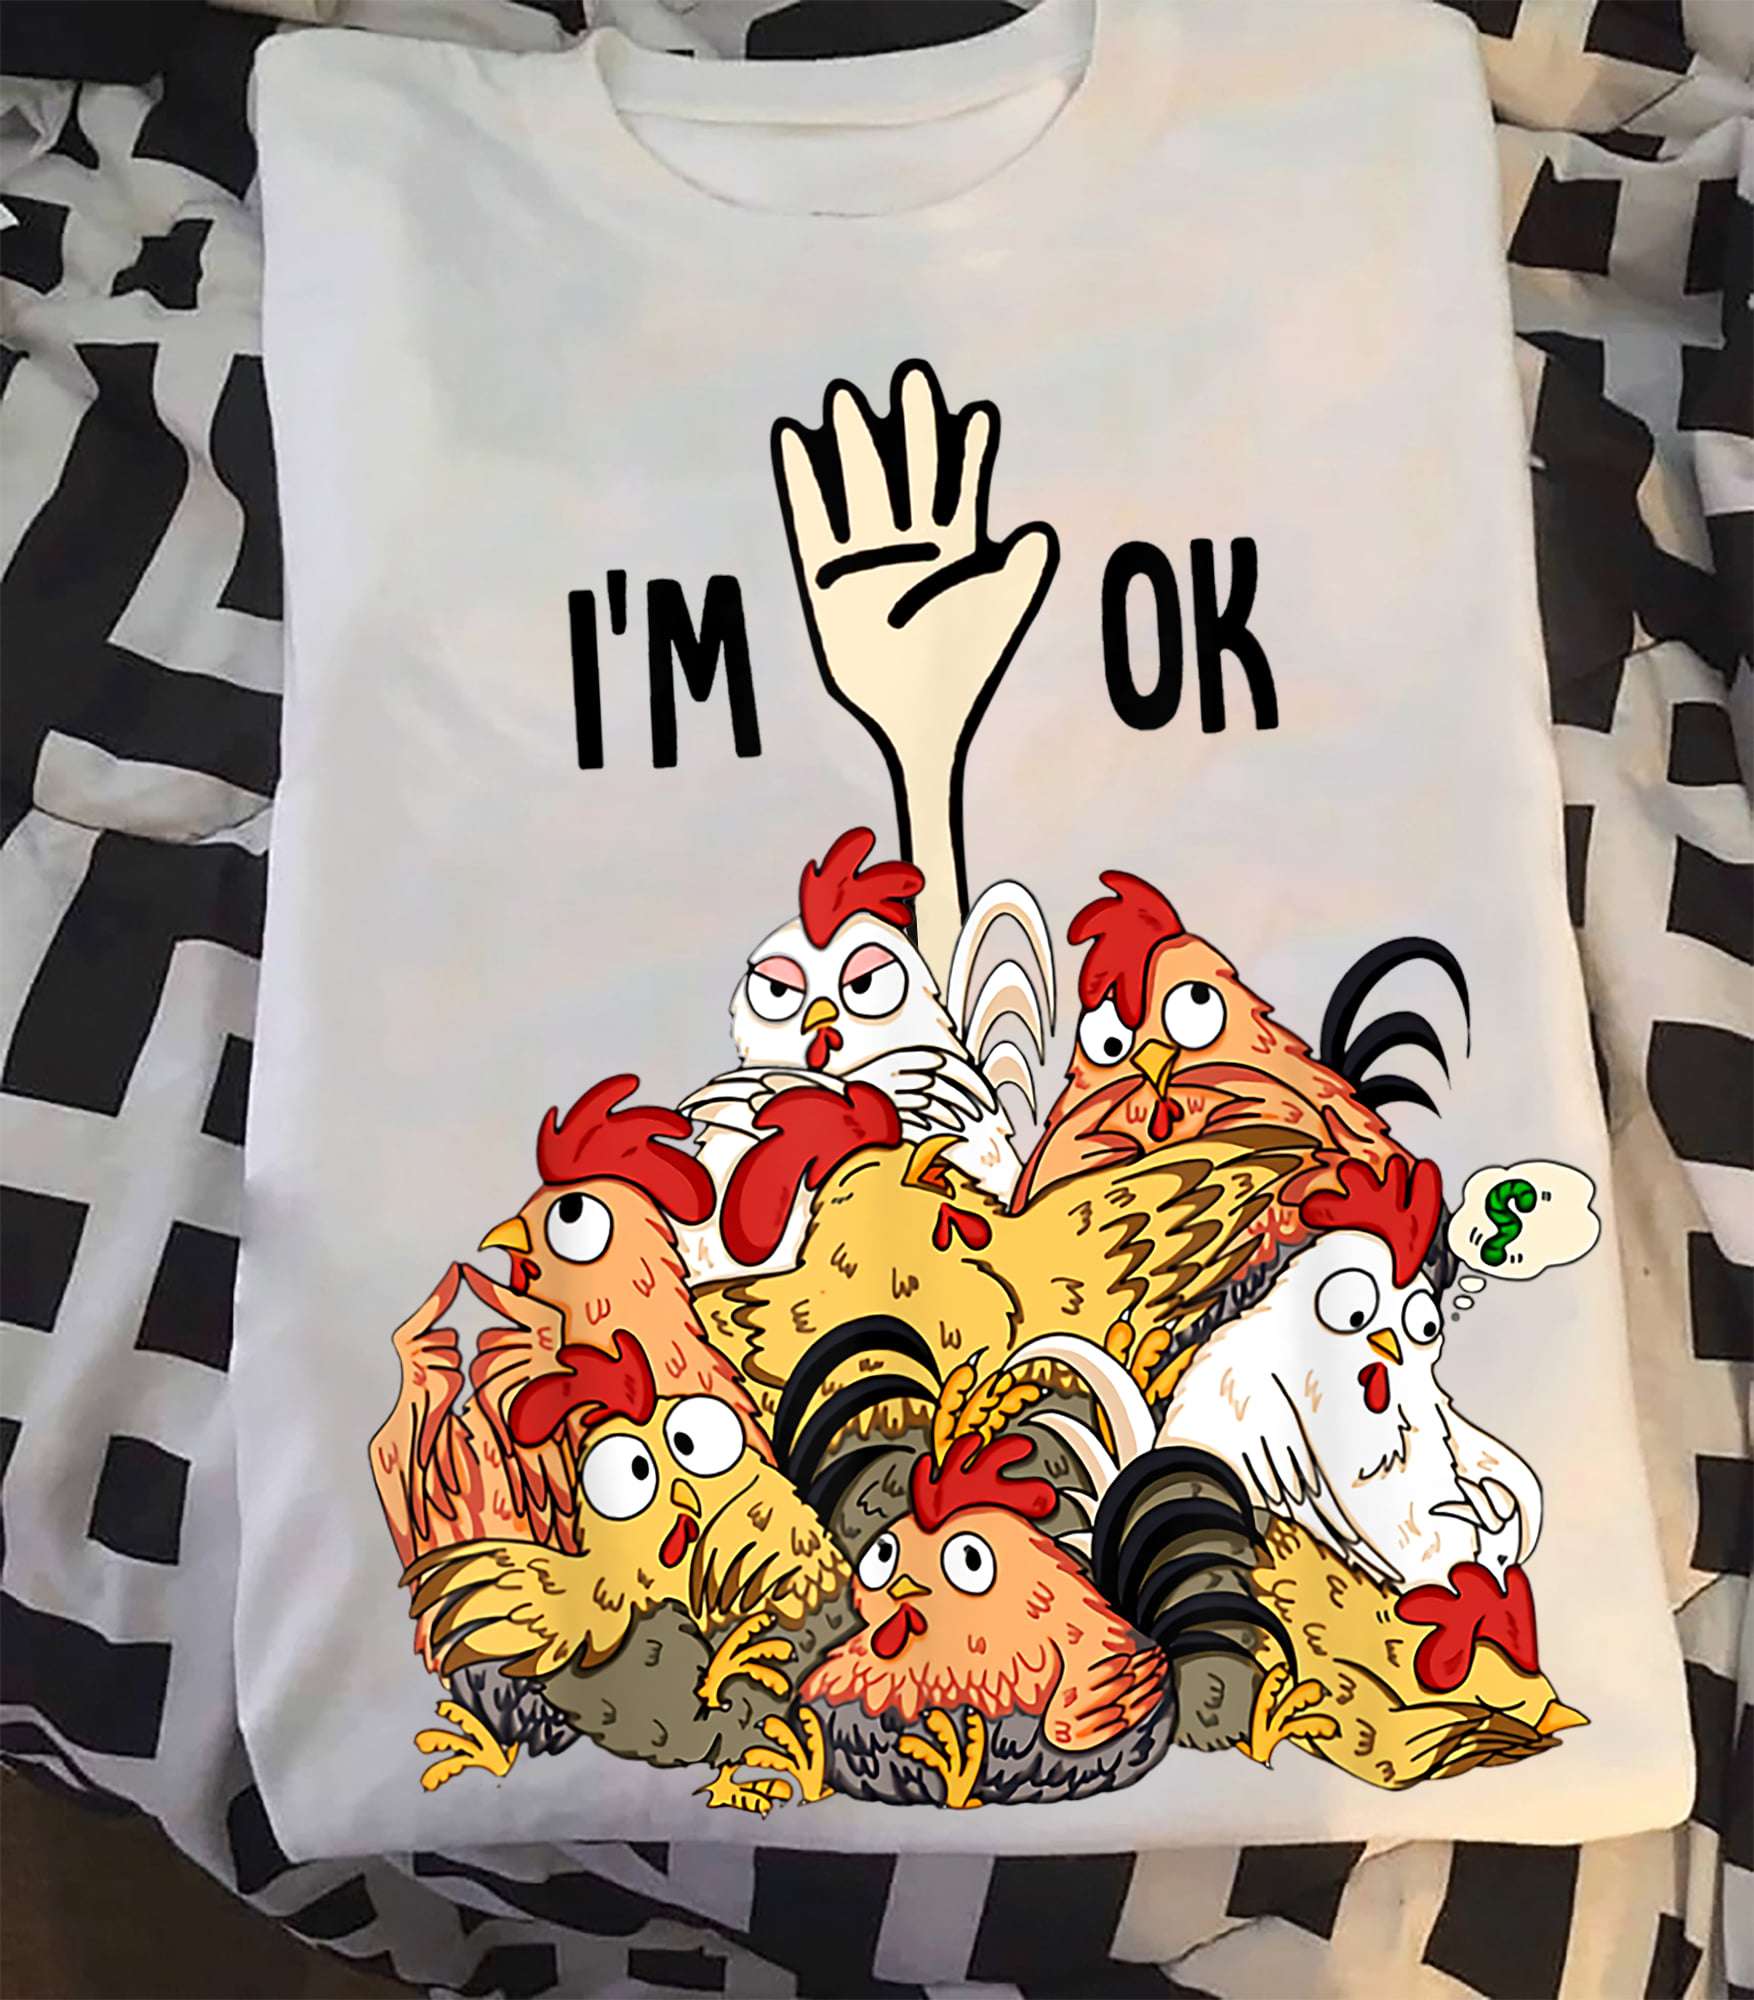 I'm ok - Deep in chicken, crazy chickens, chicken graphic T-shirt